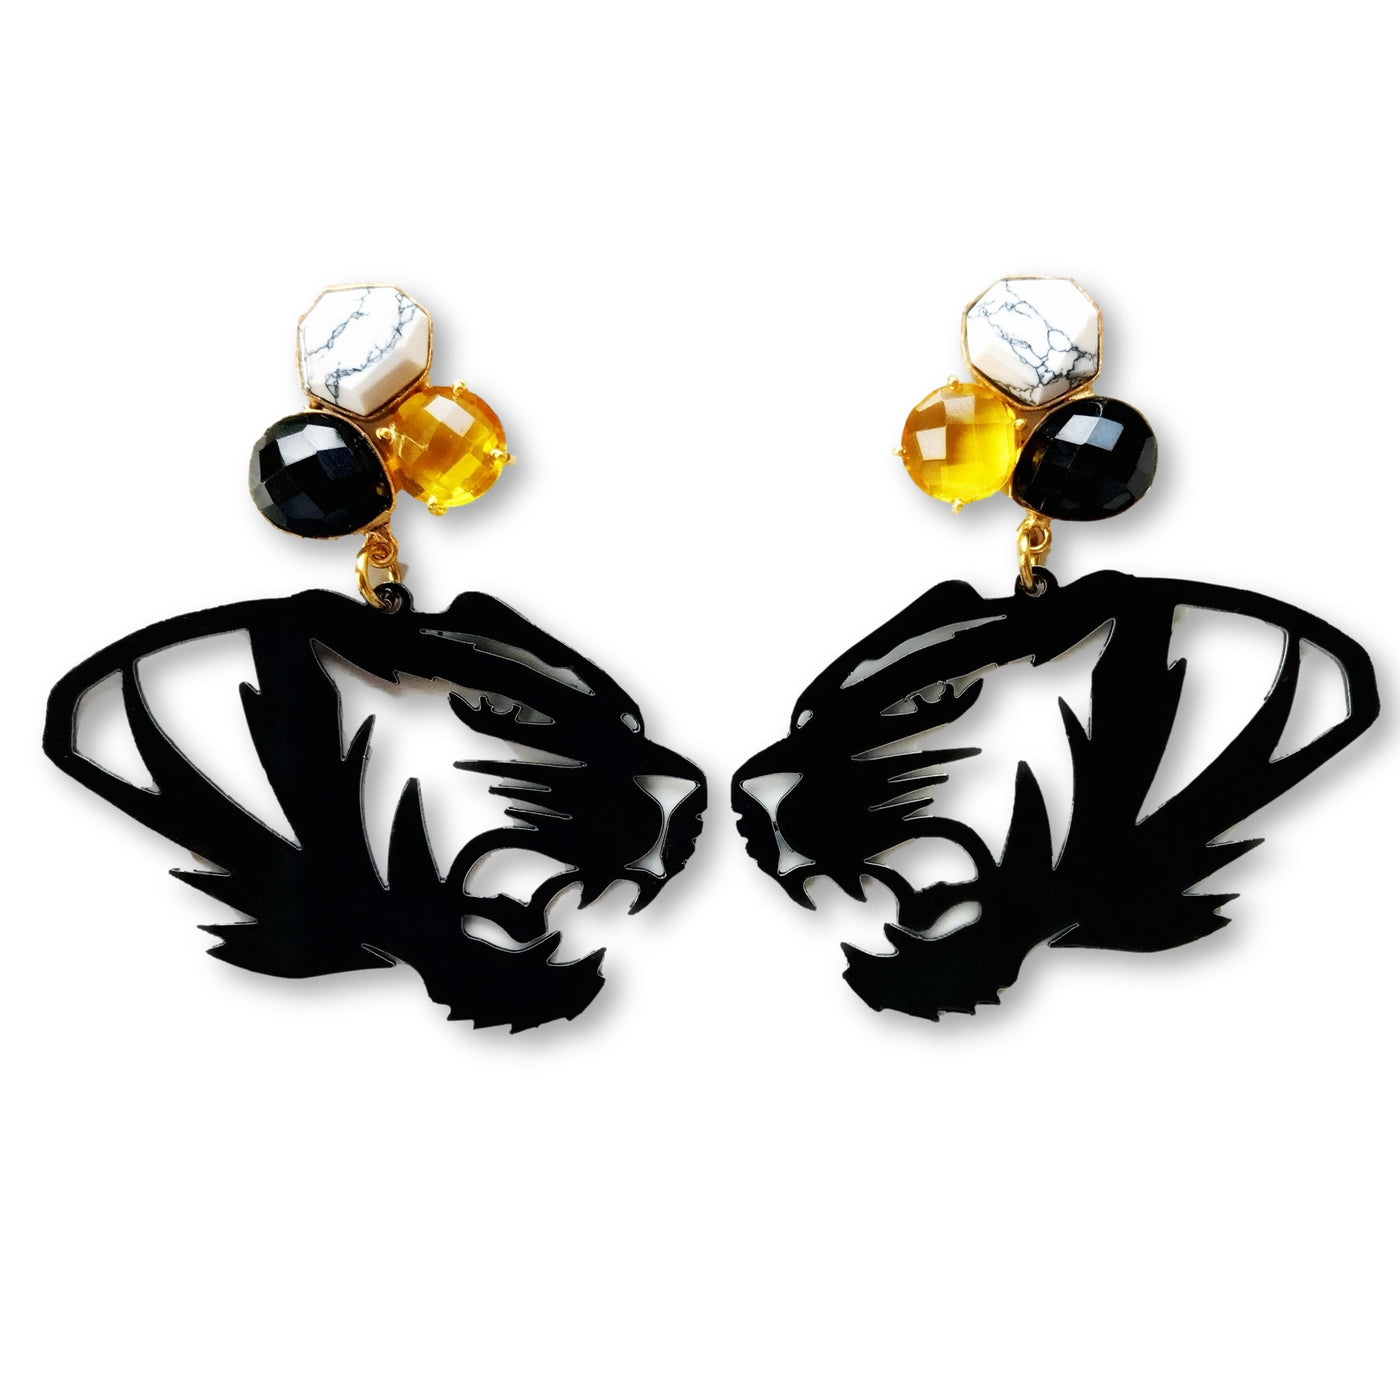 Mizzou Black Tiger Earrings with 3 Gemstones